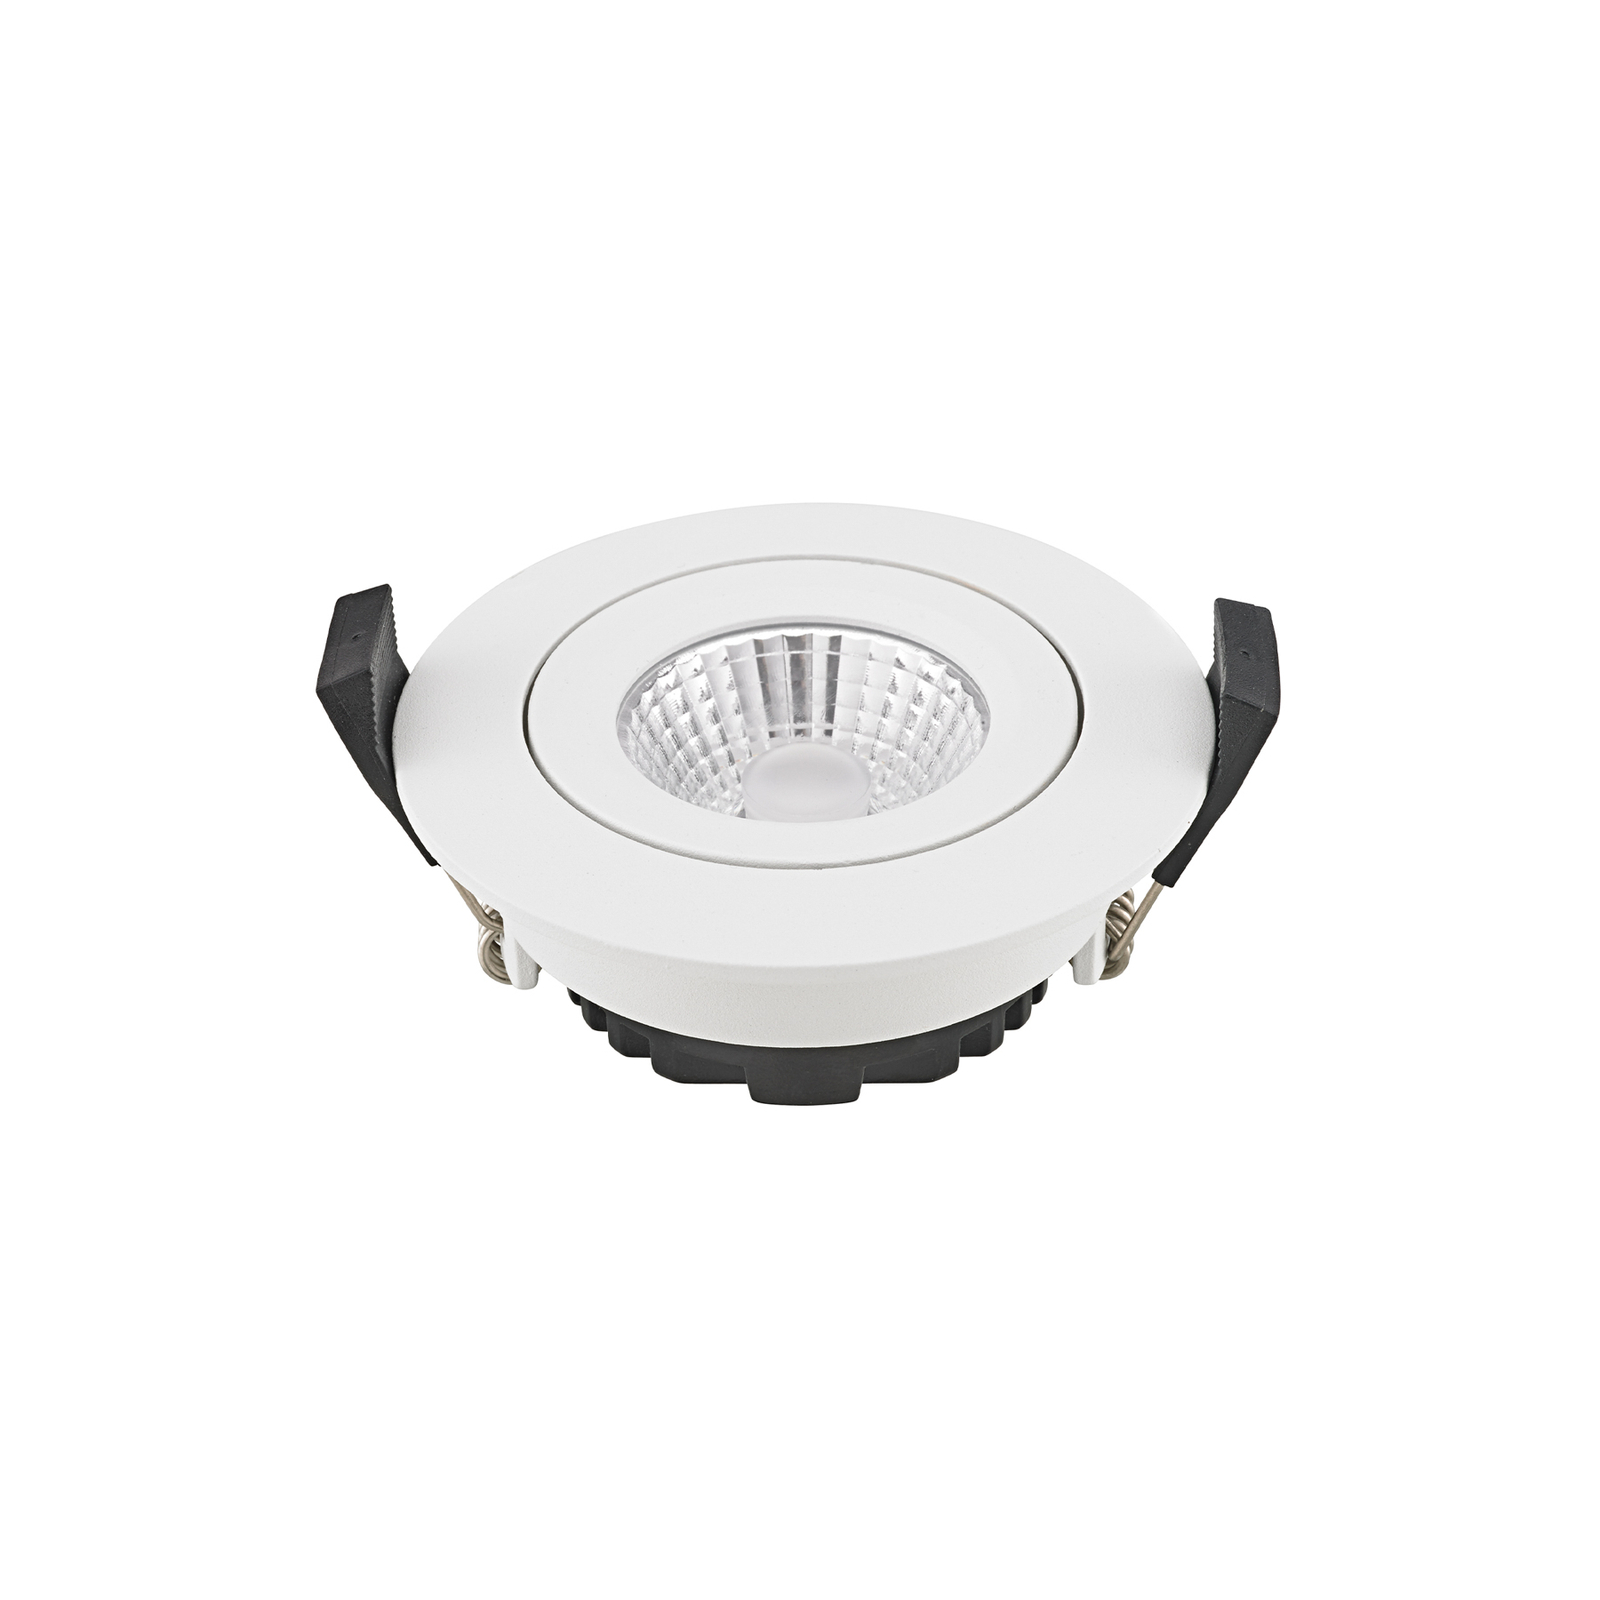 LED Spot à encastrer au plafond Diled, Ø 8,5 cm, 6 W, 3.000 K, blanc